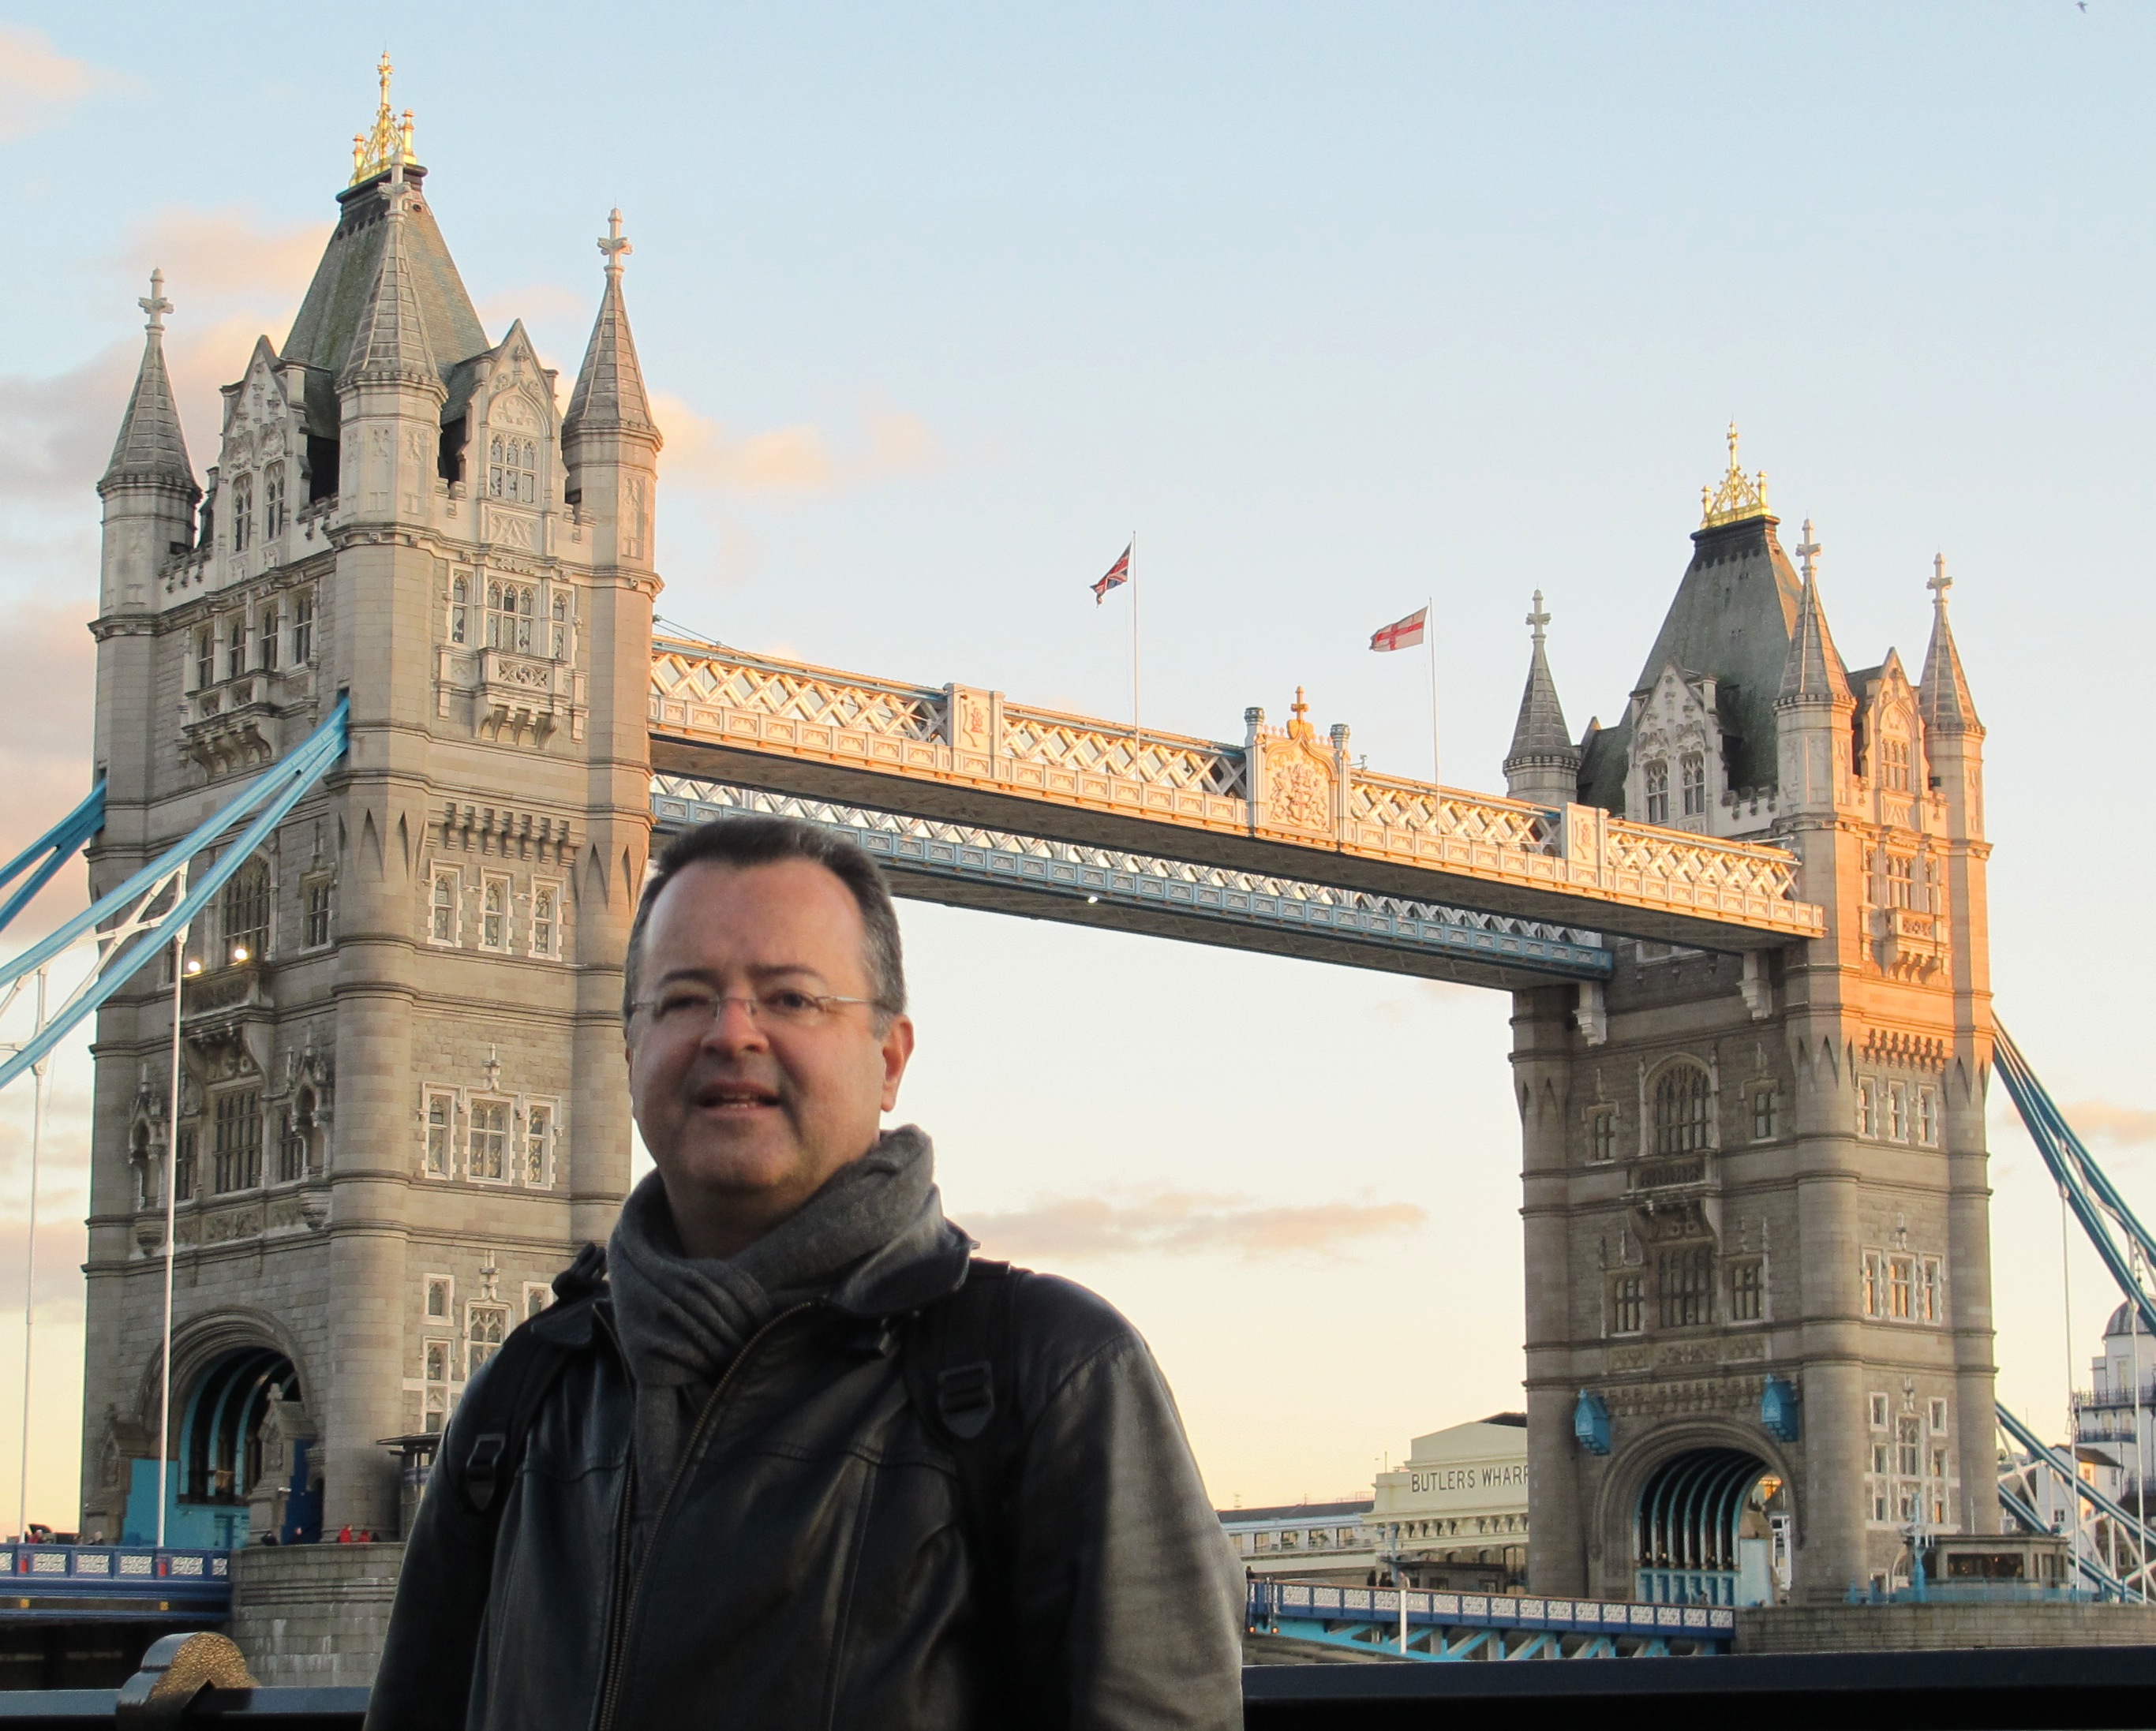 Ademar Galvão em frente ao "London Tower" (Torre de Londres)